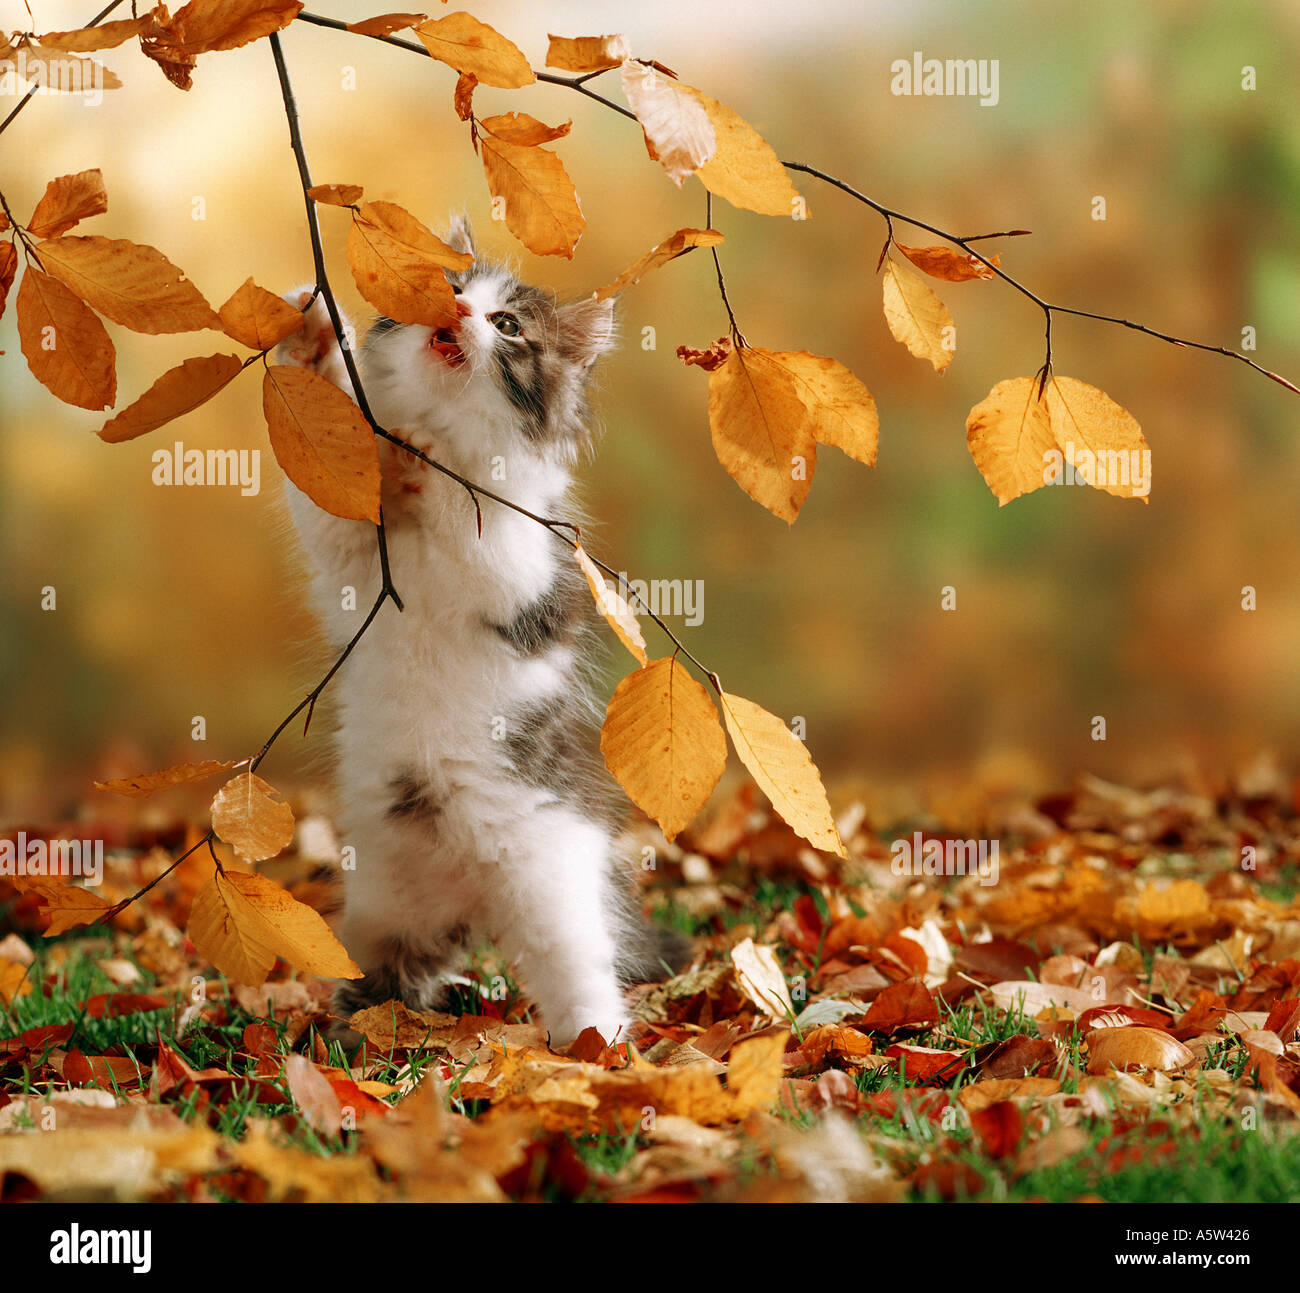 cat kitten in foliage Stock Photo